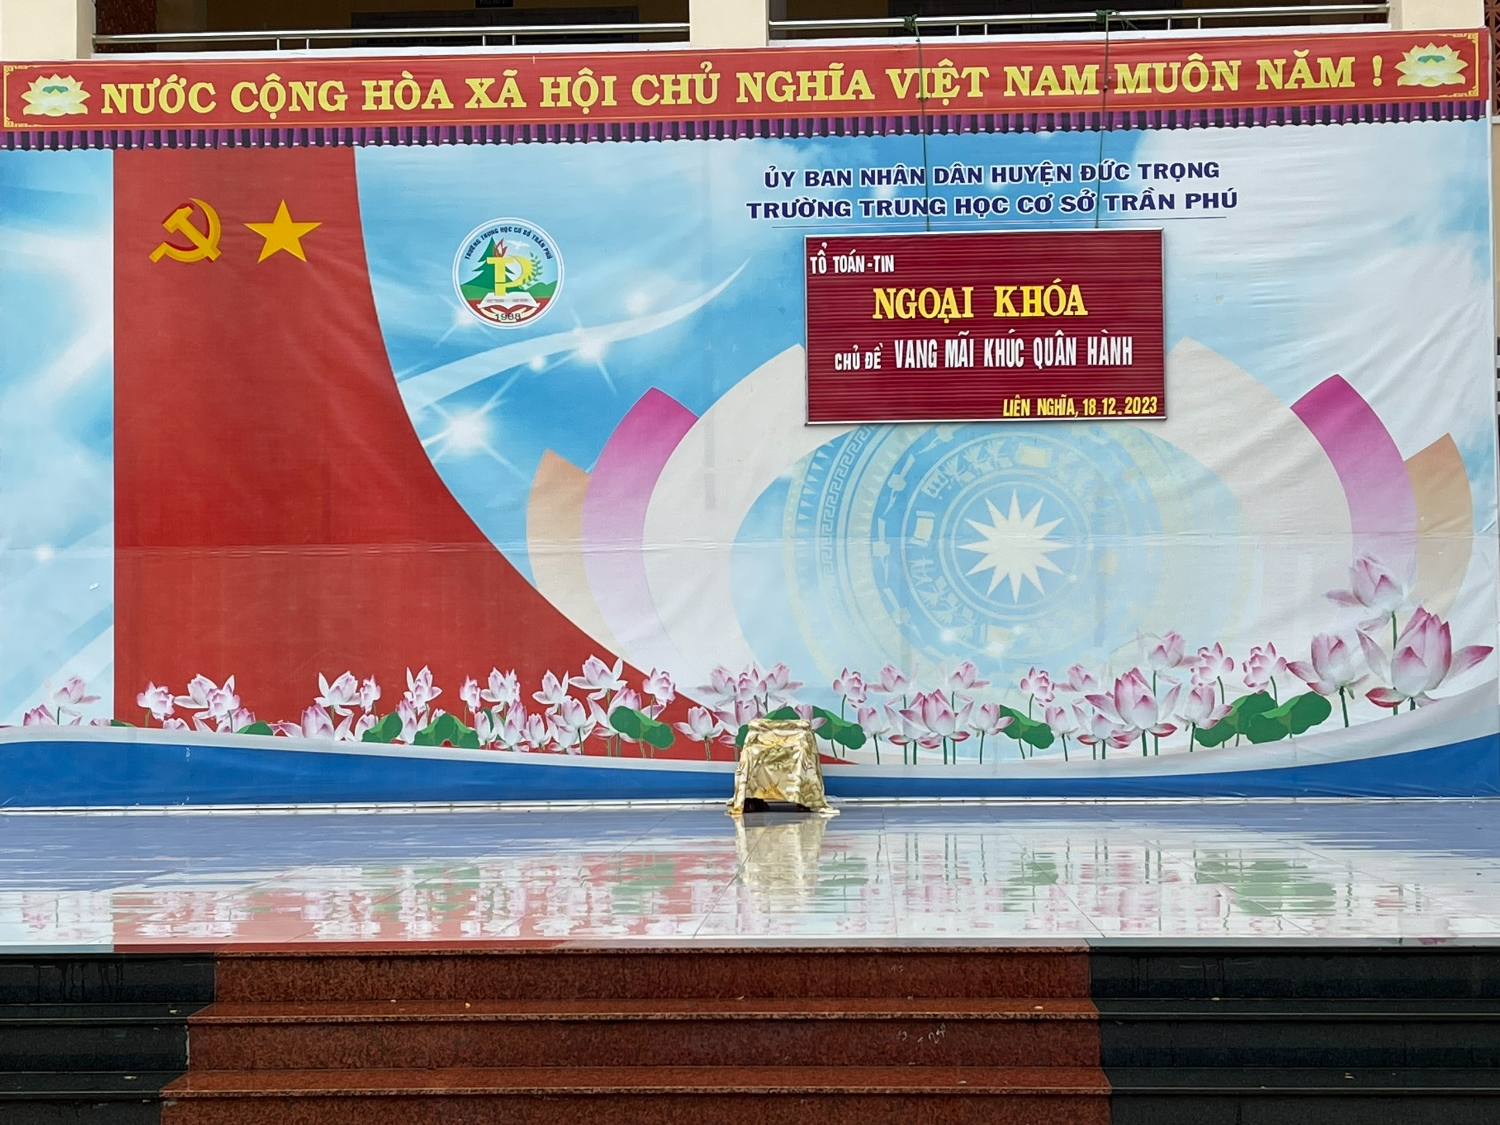 Tổ Toán - Tin trường THCS Trần Phú tổ chức ngoại khoá "VANG MÃI KHÚC QUÂN HÀNH" để kỉ niệm ngày Thành lập Quân đội nhân dân Việt Nam